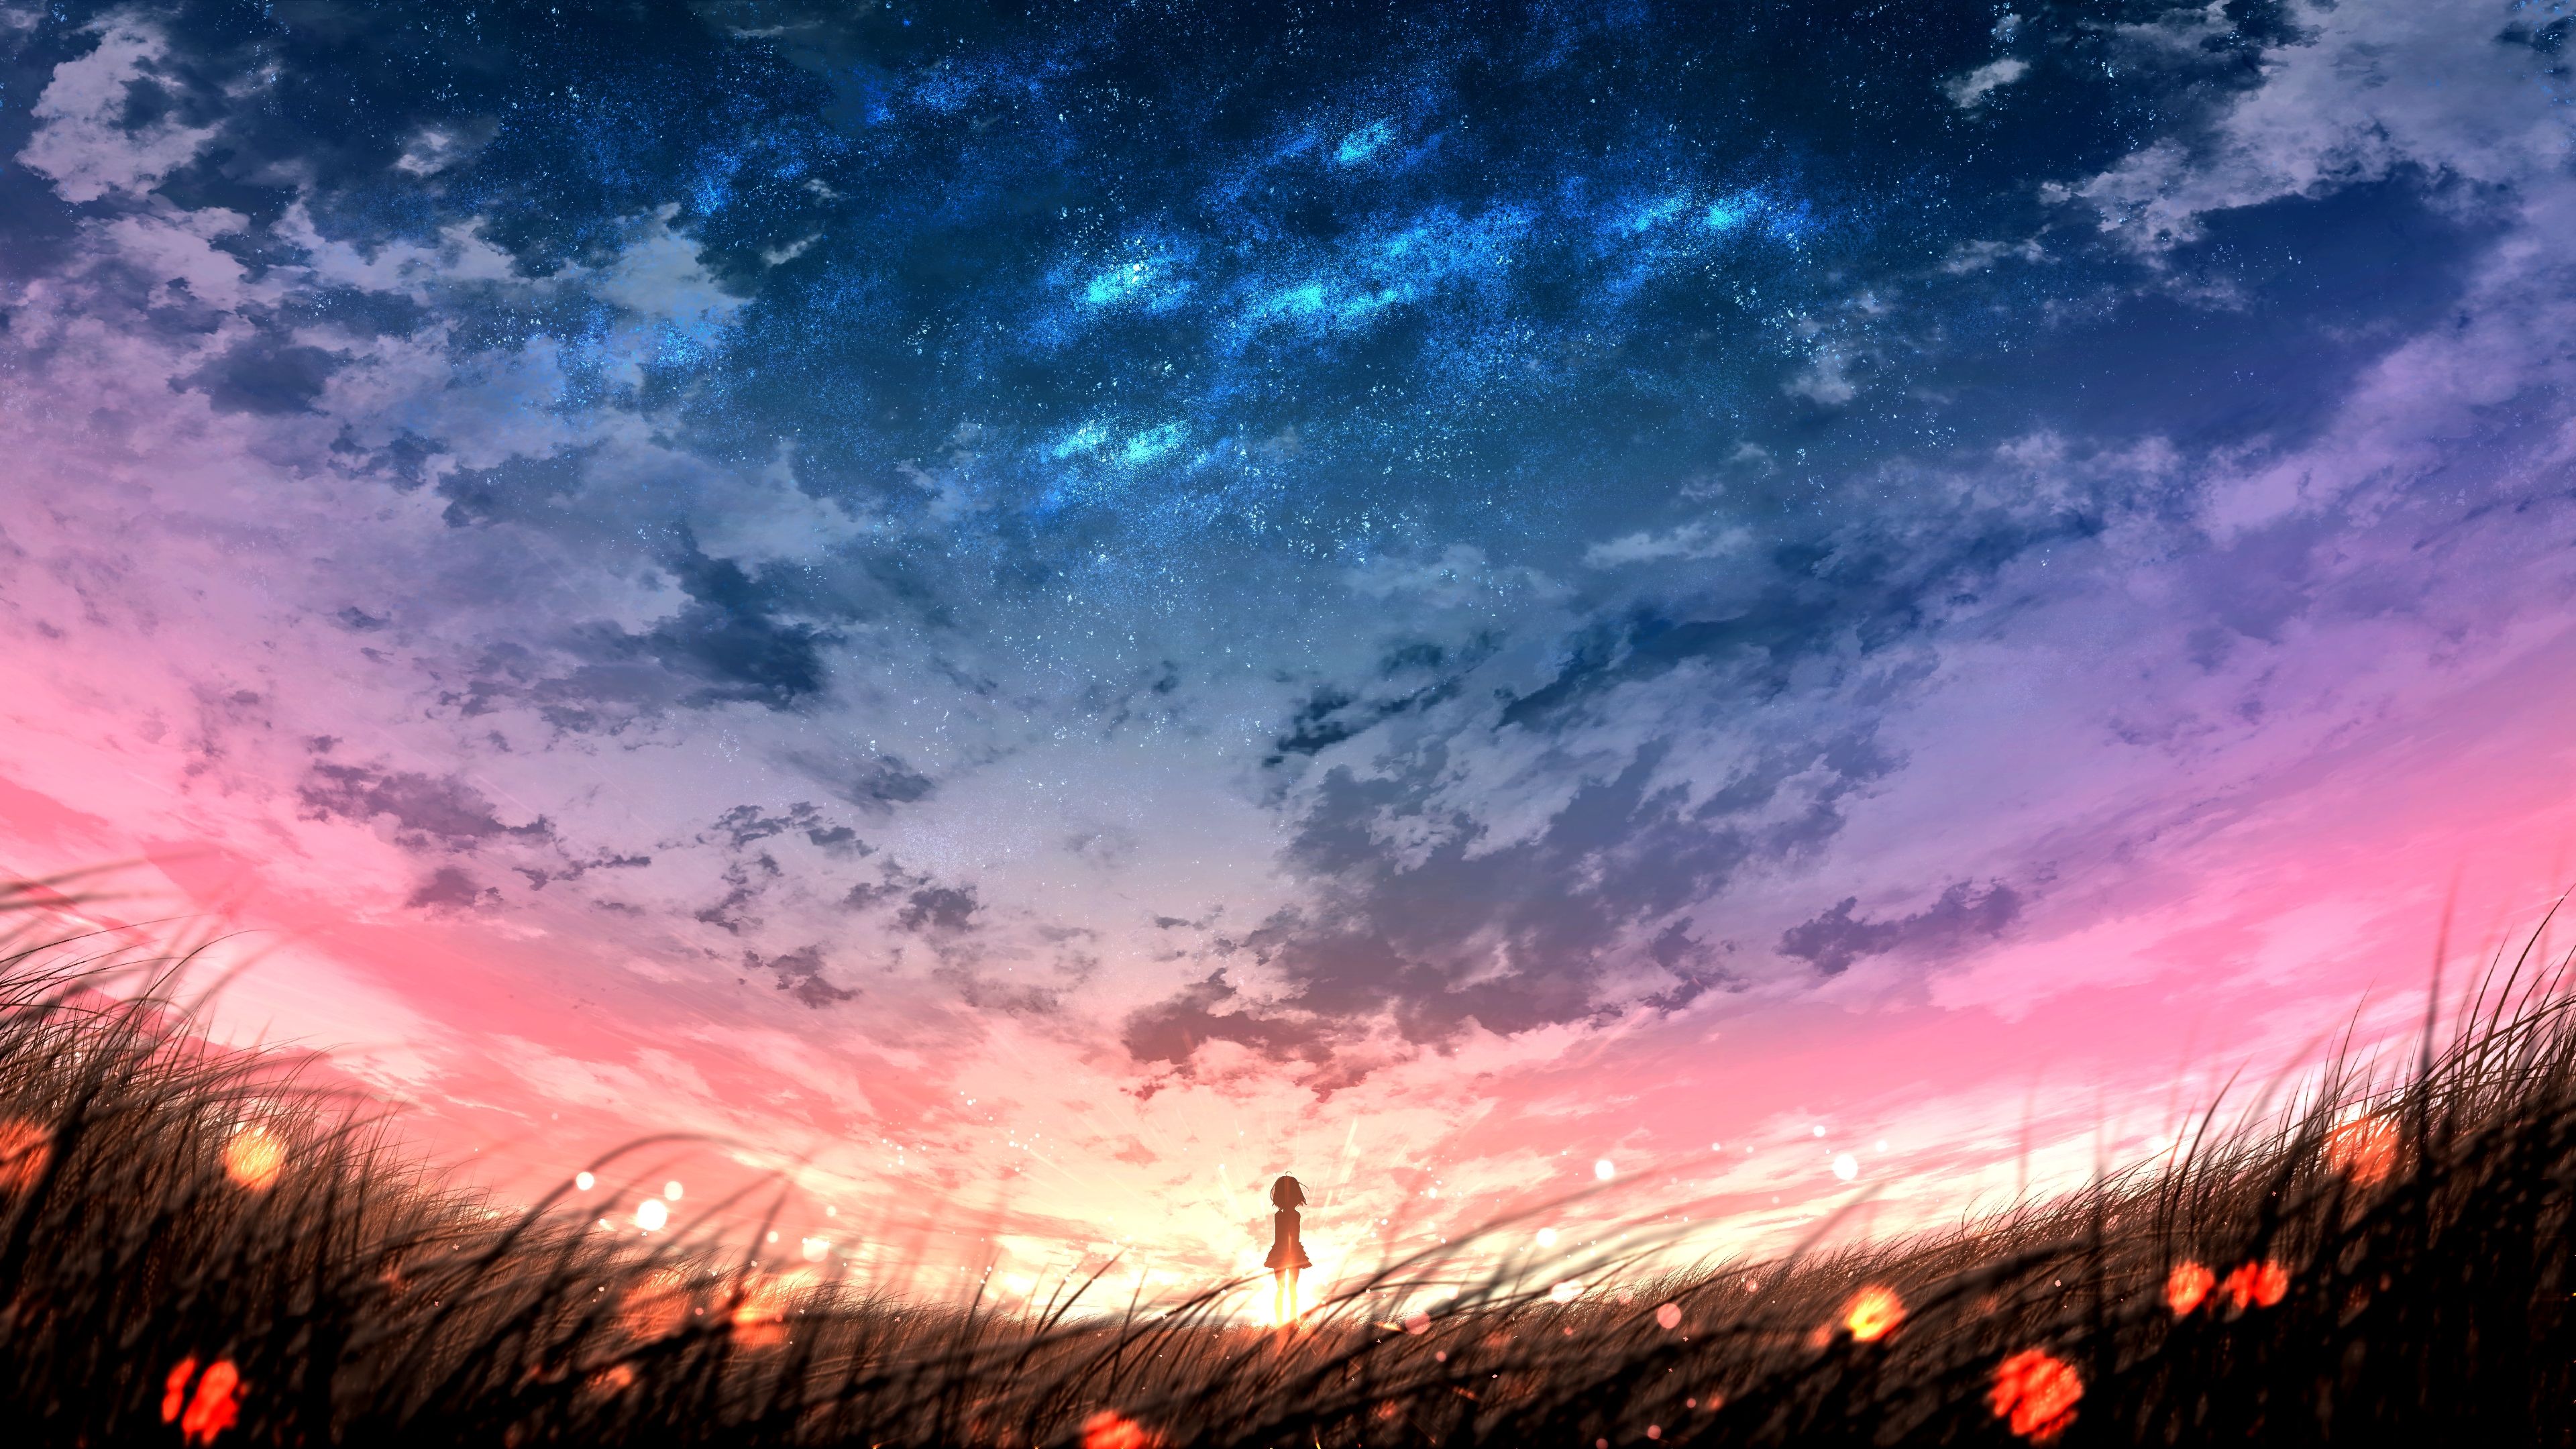 Desktop Wallpaper Aesthetic Anime Sunset Background - pic-insider